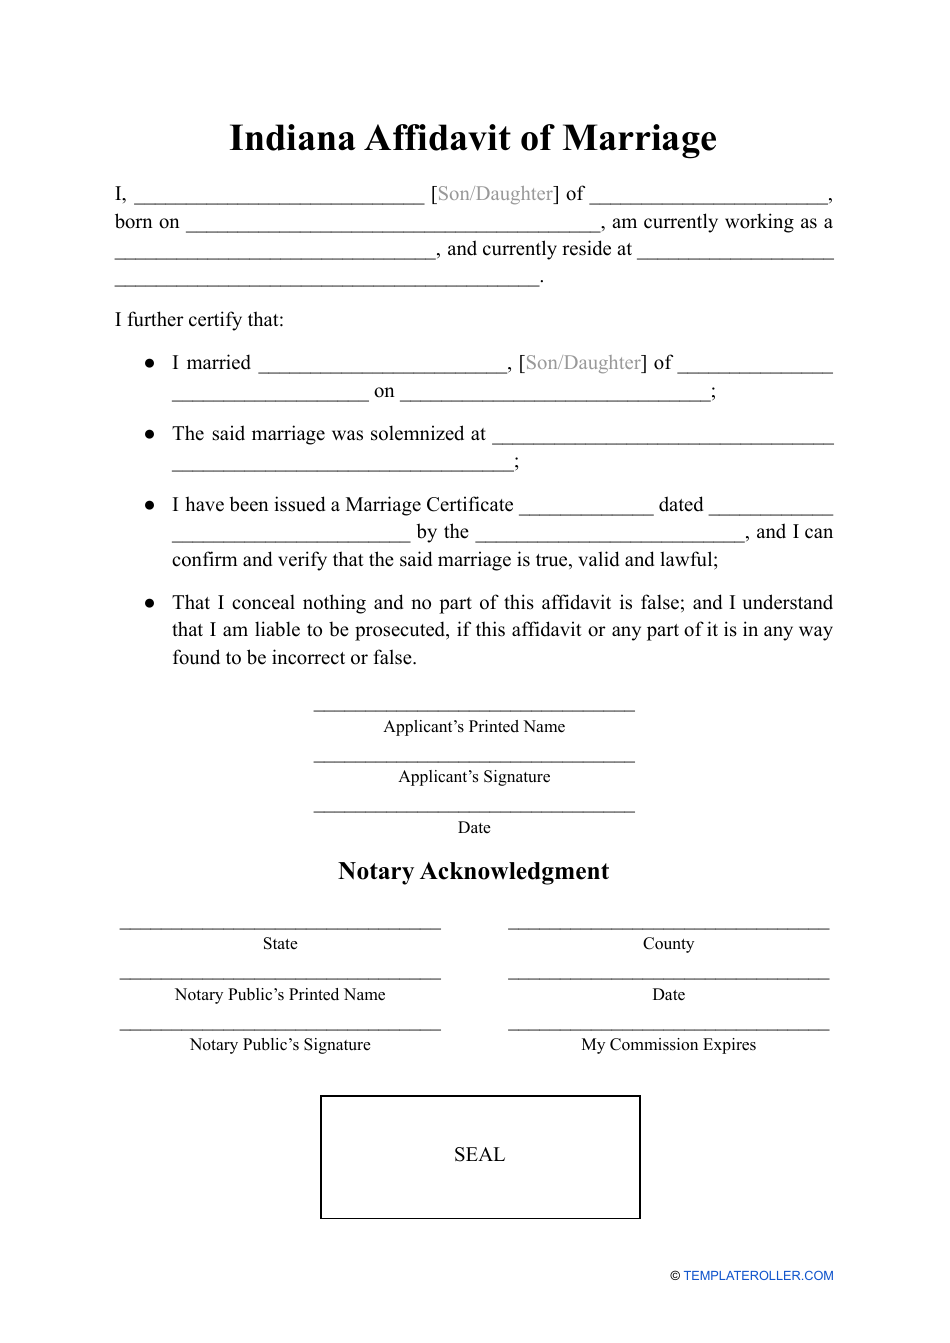 Affidavit of Marriage - Indiana, Page 1